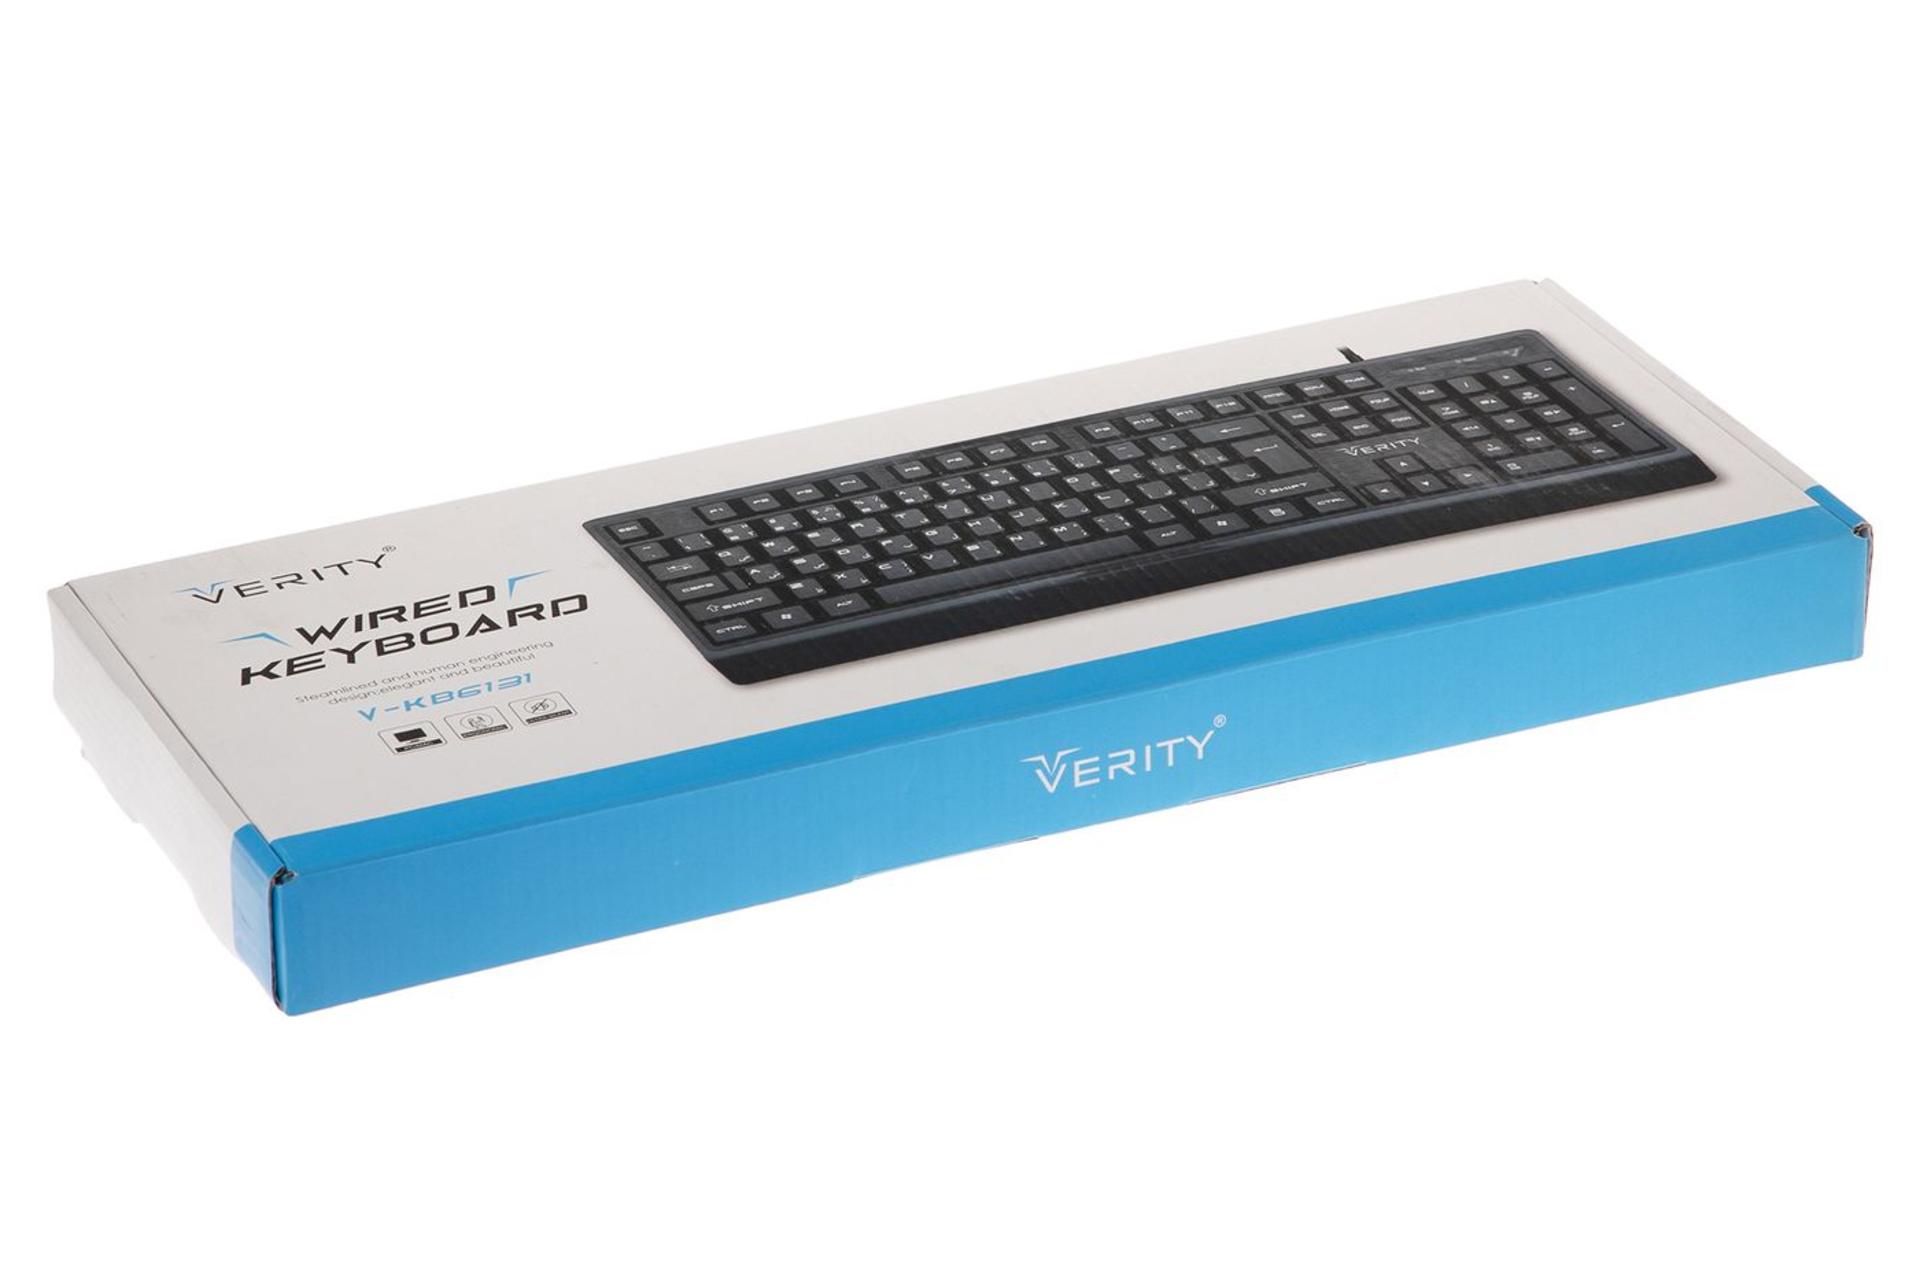 جعبه وریتی Verity V-KB6131